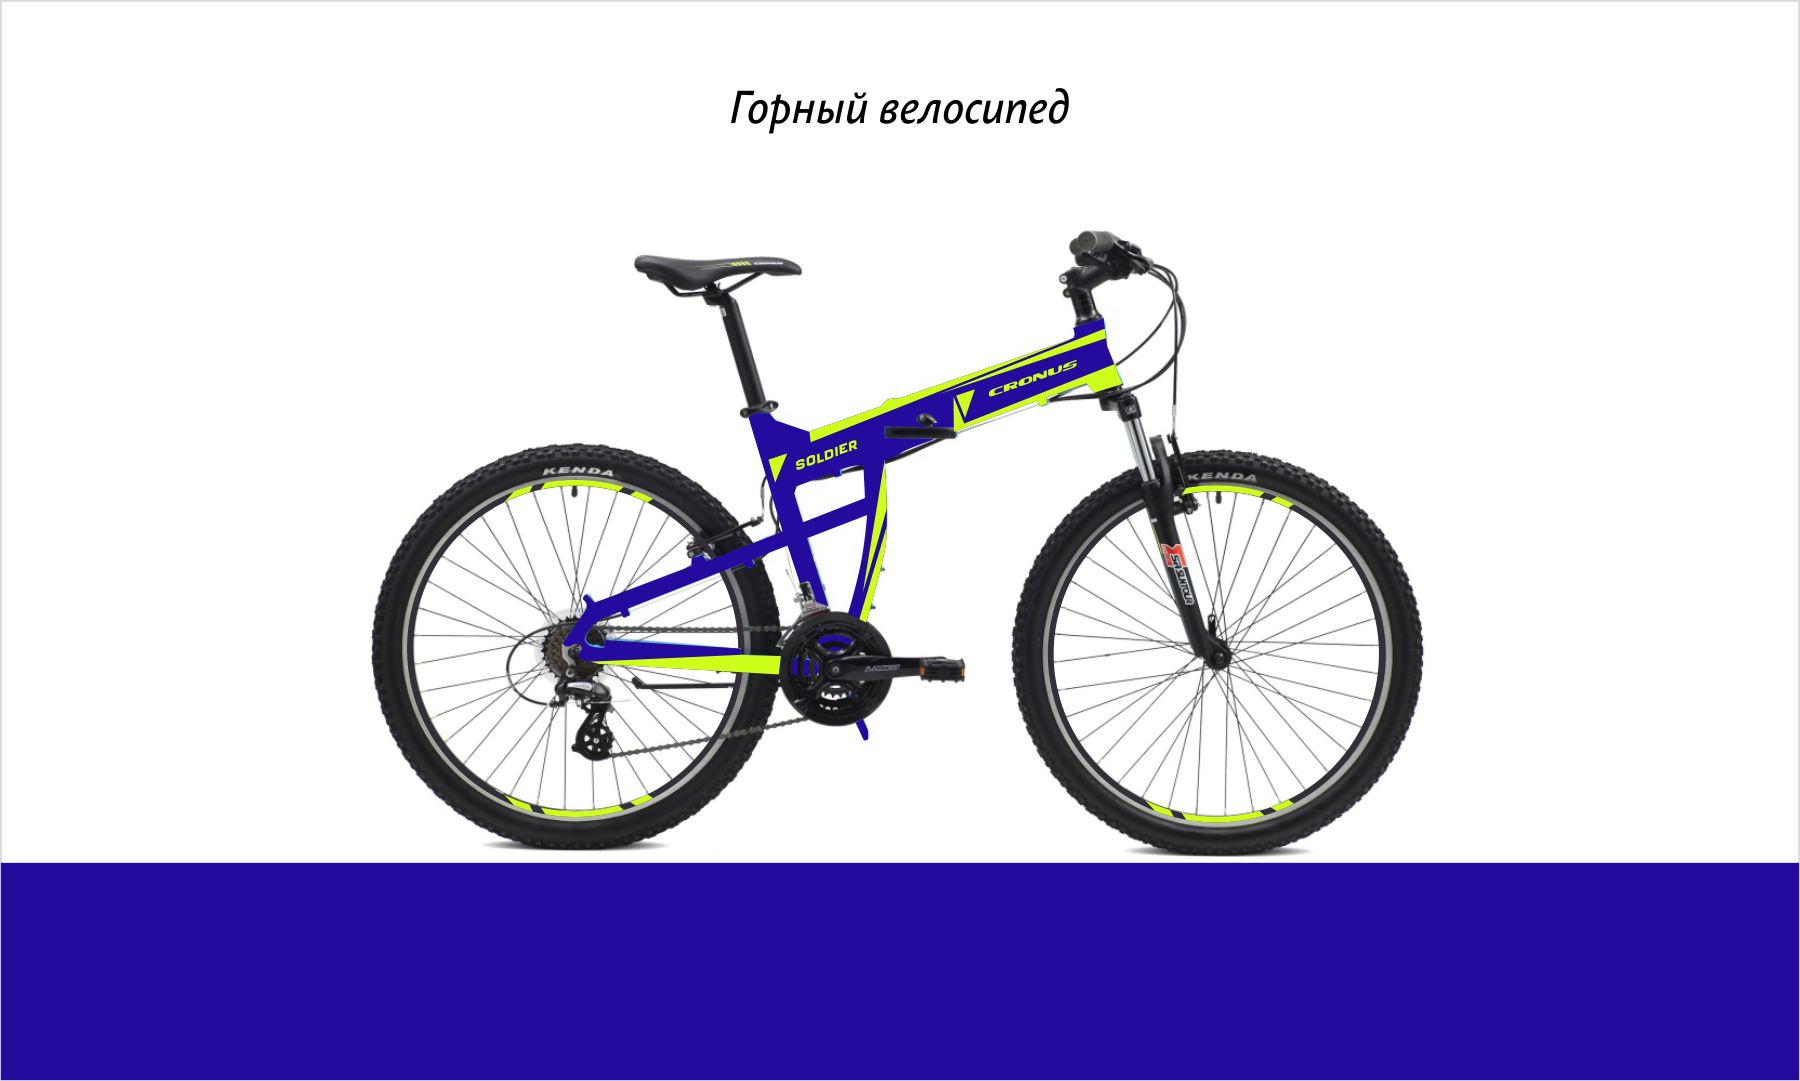 Дизайн для коллекции велосипедов Cronus - дизайнер supersonic